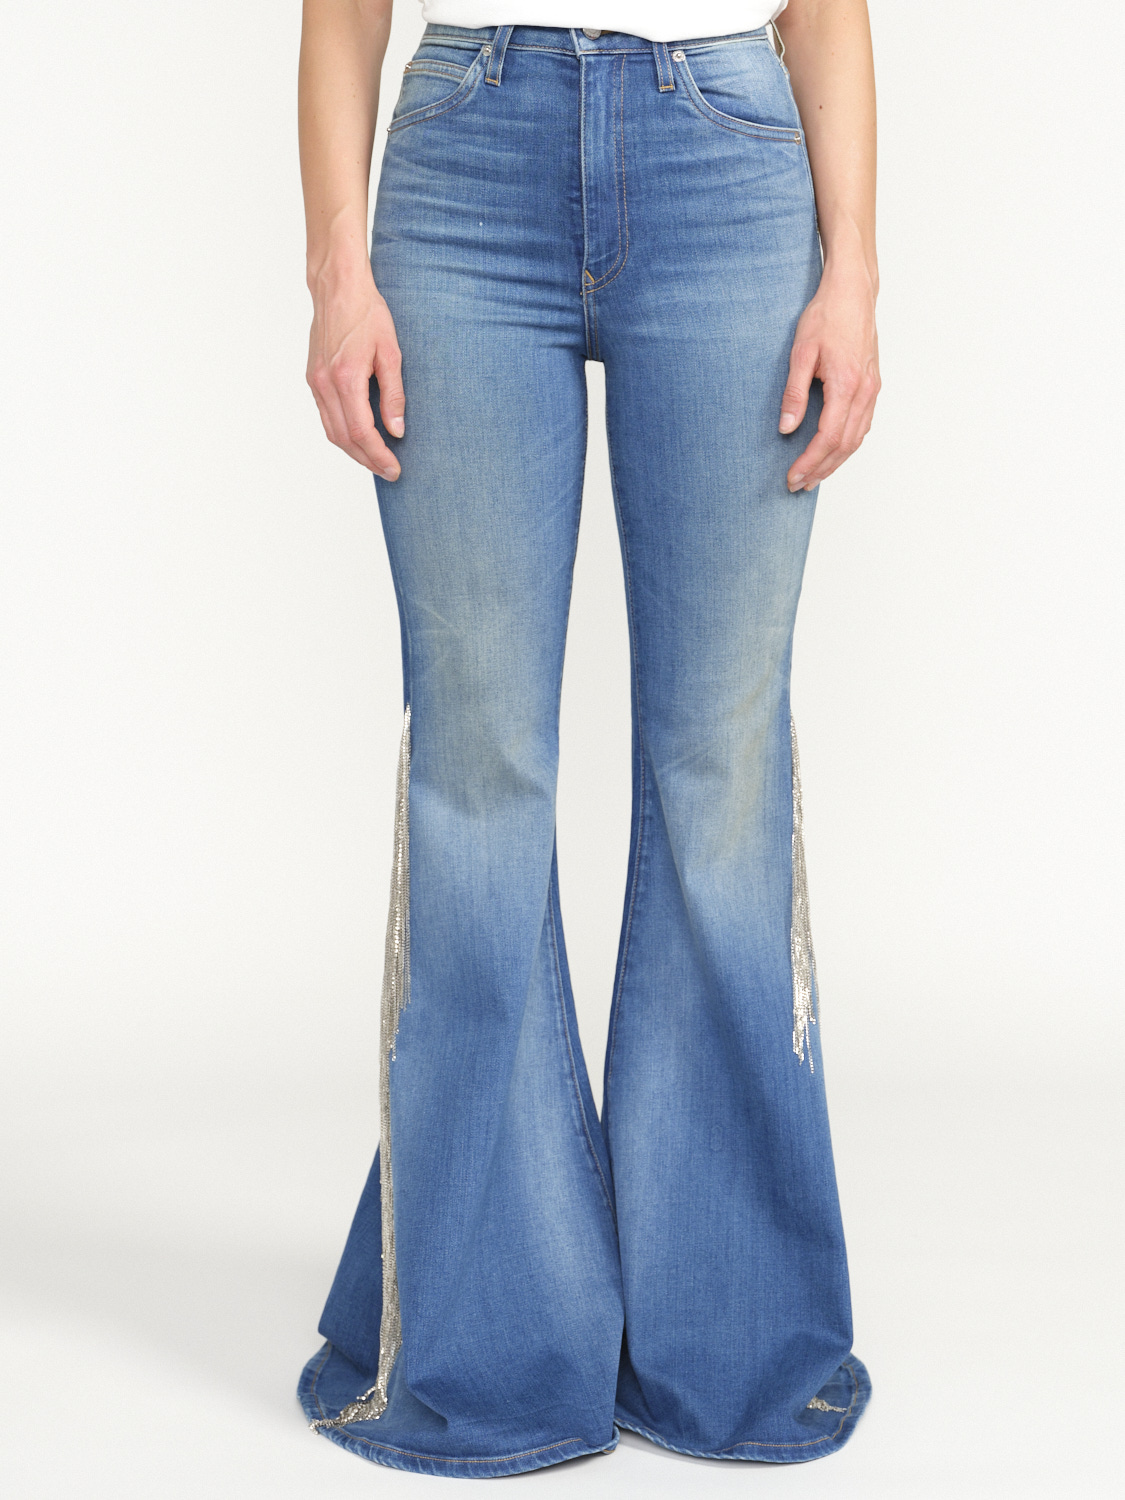 Cout De La Liberte Heidi - Low-waist Jeans-Schlaghose mit Glitzer Fransen-Details blau 25